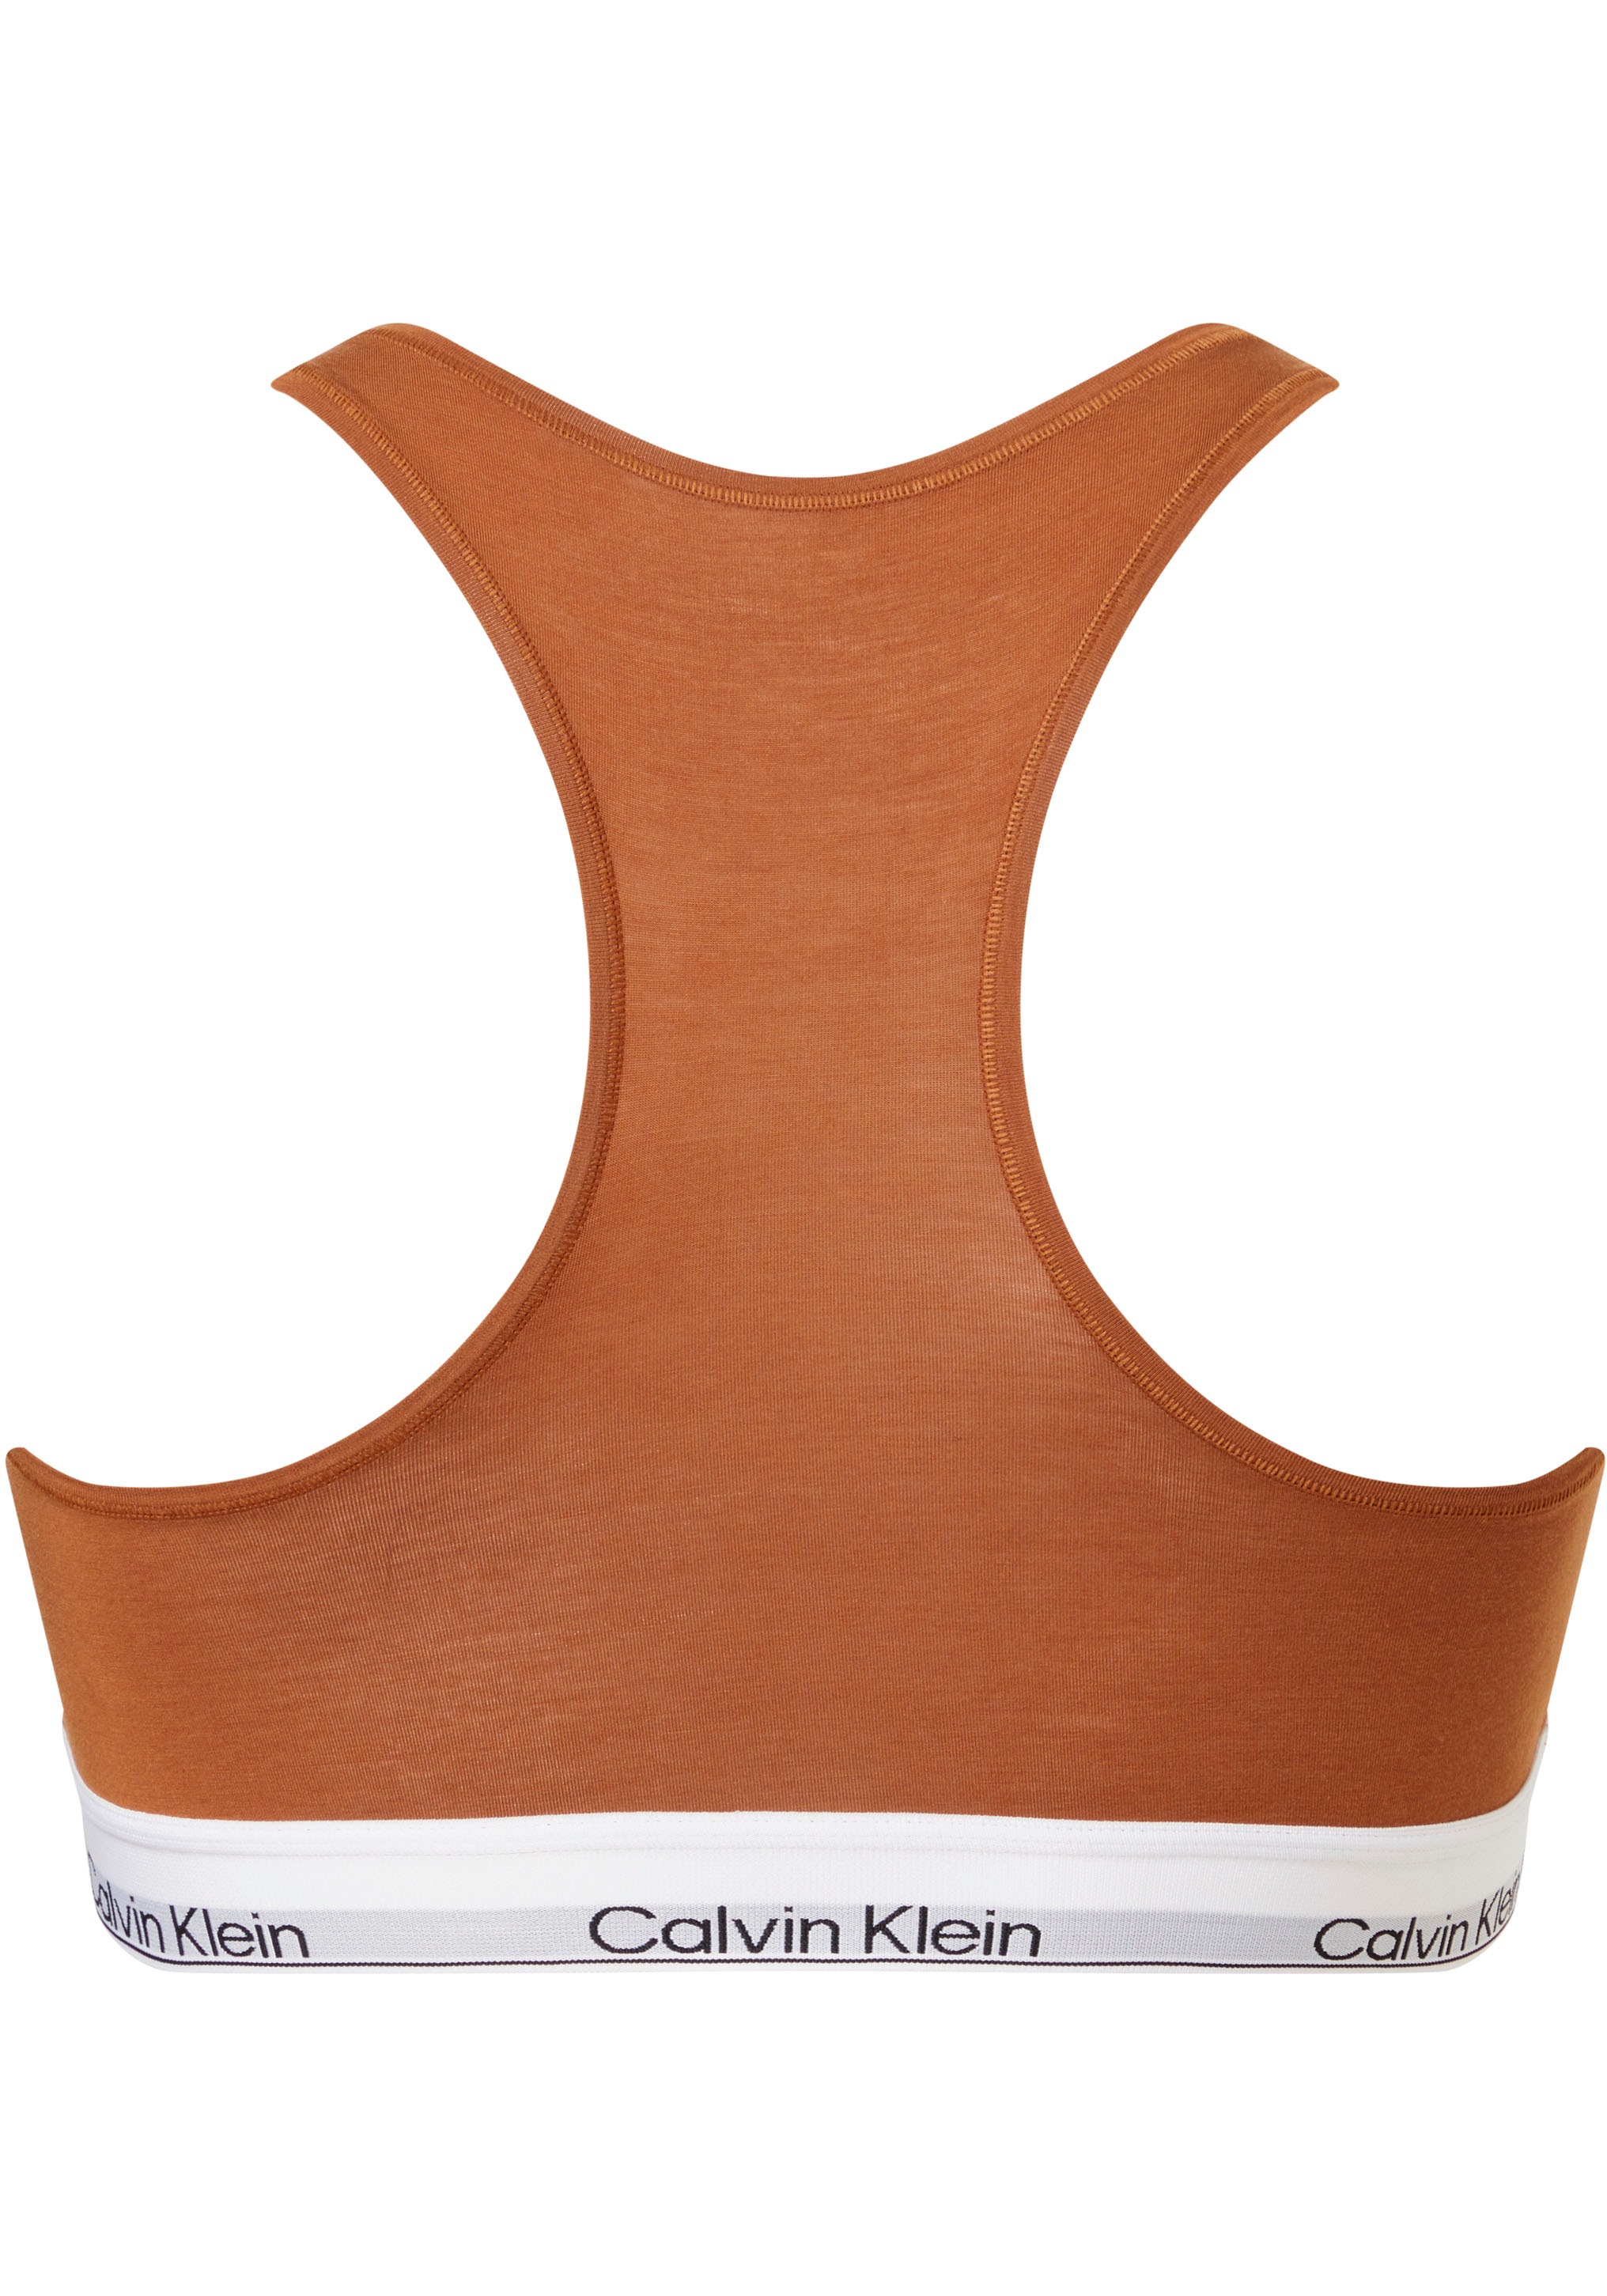 ♕ Calvin Klein Bralette, mit Logodruck auf dem Elastik-Unterbrustband  versandkostenfrei bestellen